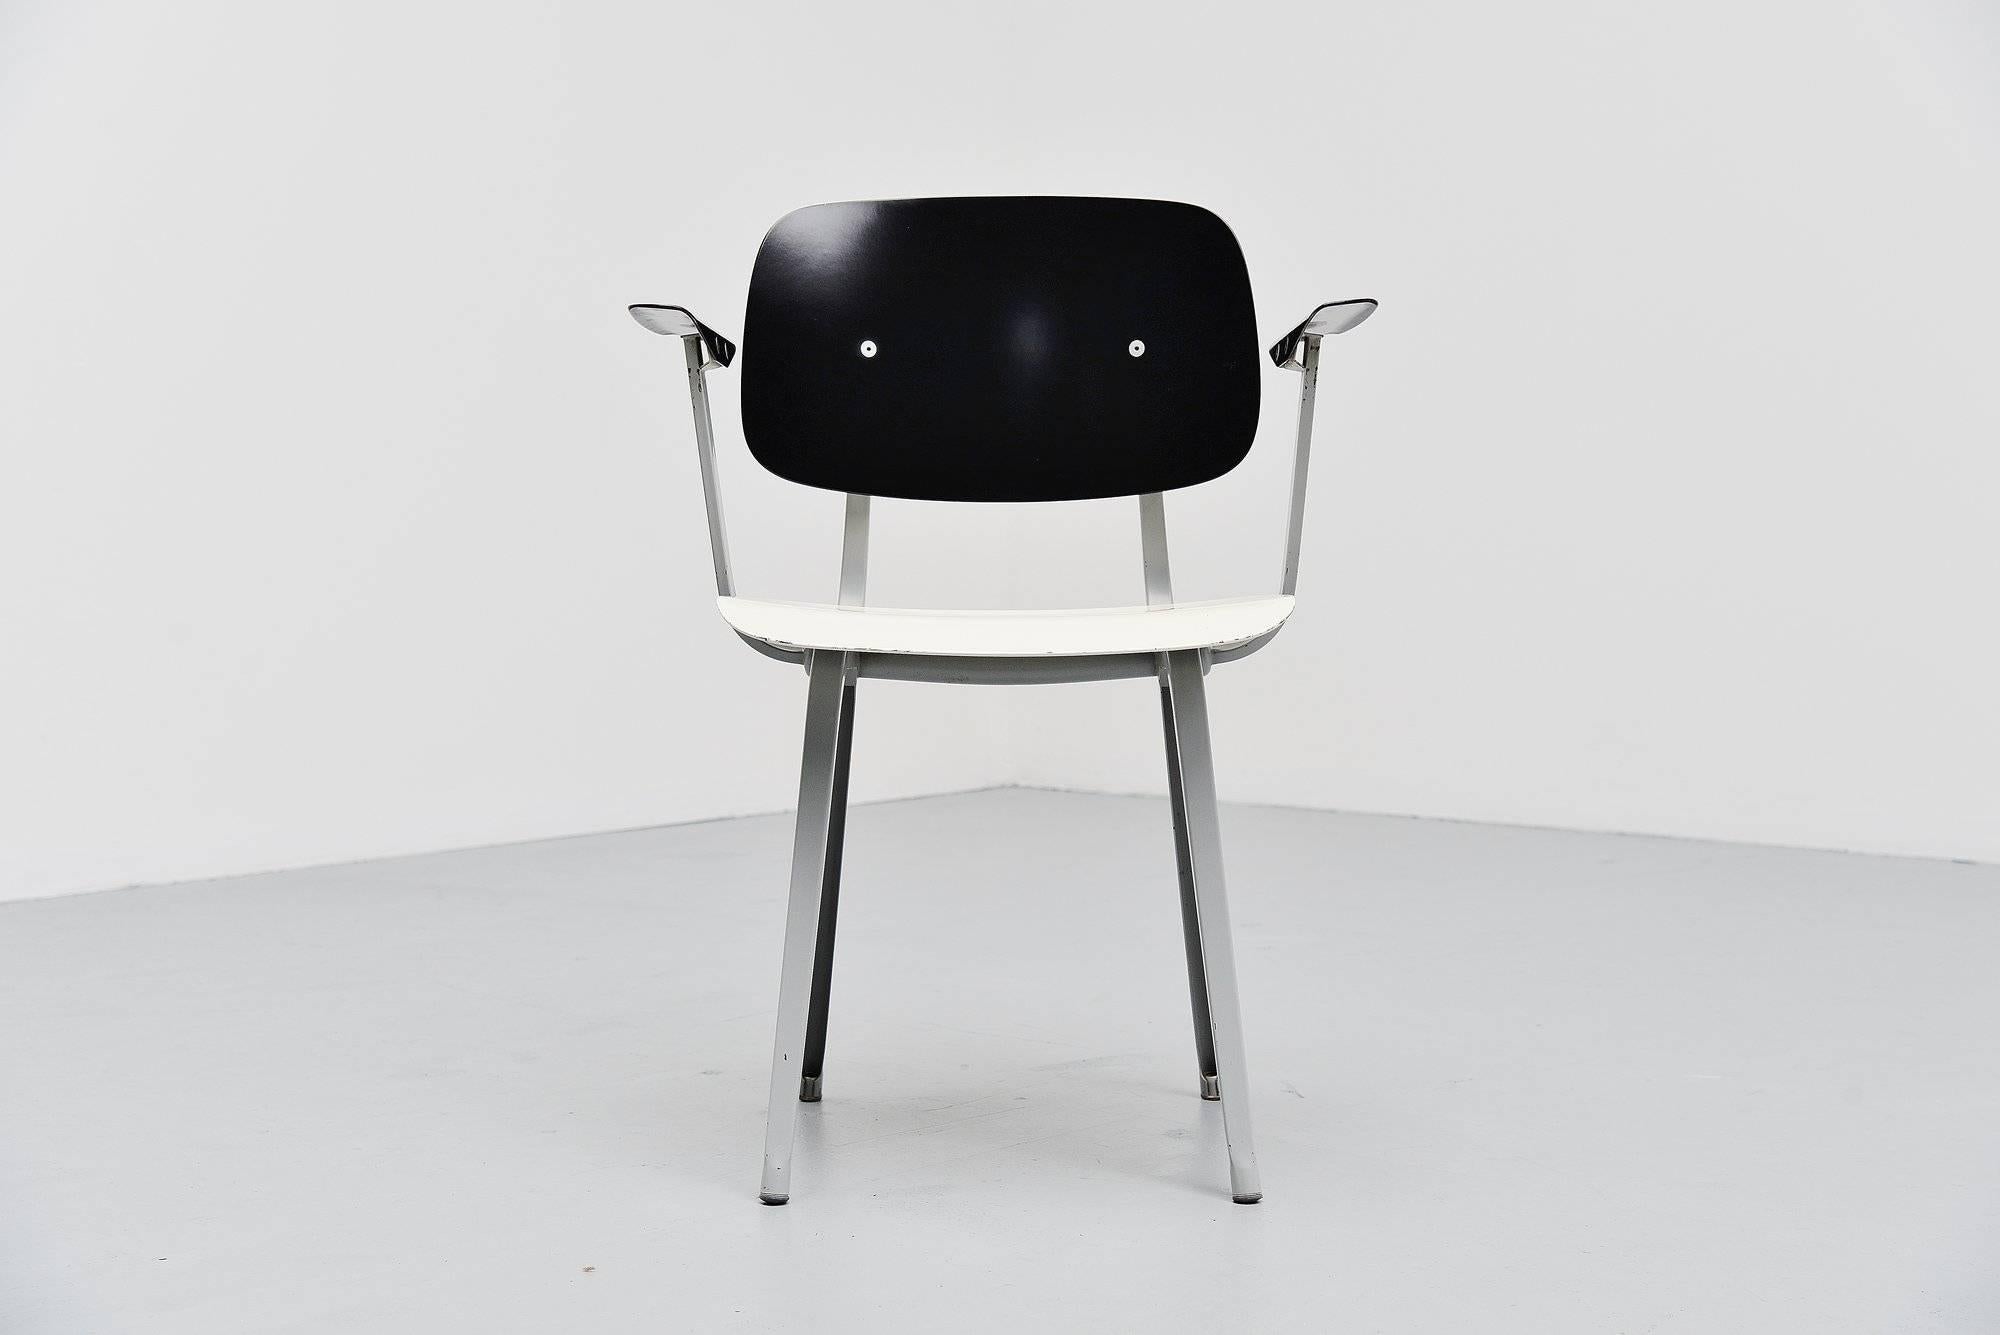 Seltener Sessel Revolt aus erster Produktion, entworfen von Friso Kramer für Ahrend de Cirkel, Holland, 1953. Dieser Stuhl wurde für die TH Delft angefertigt, die Friso Kramer und Ahrend mit der Gestaltung der neuen Inneneinrichtung beauftragte.